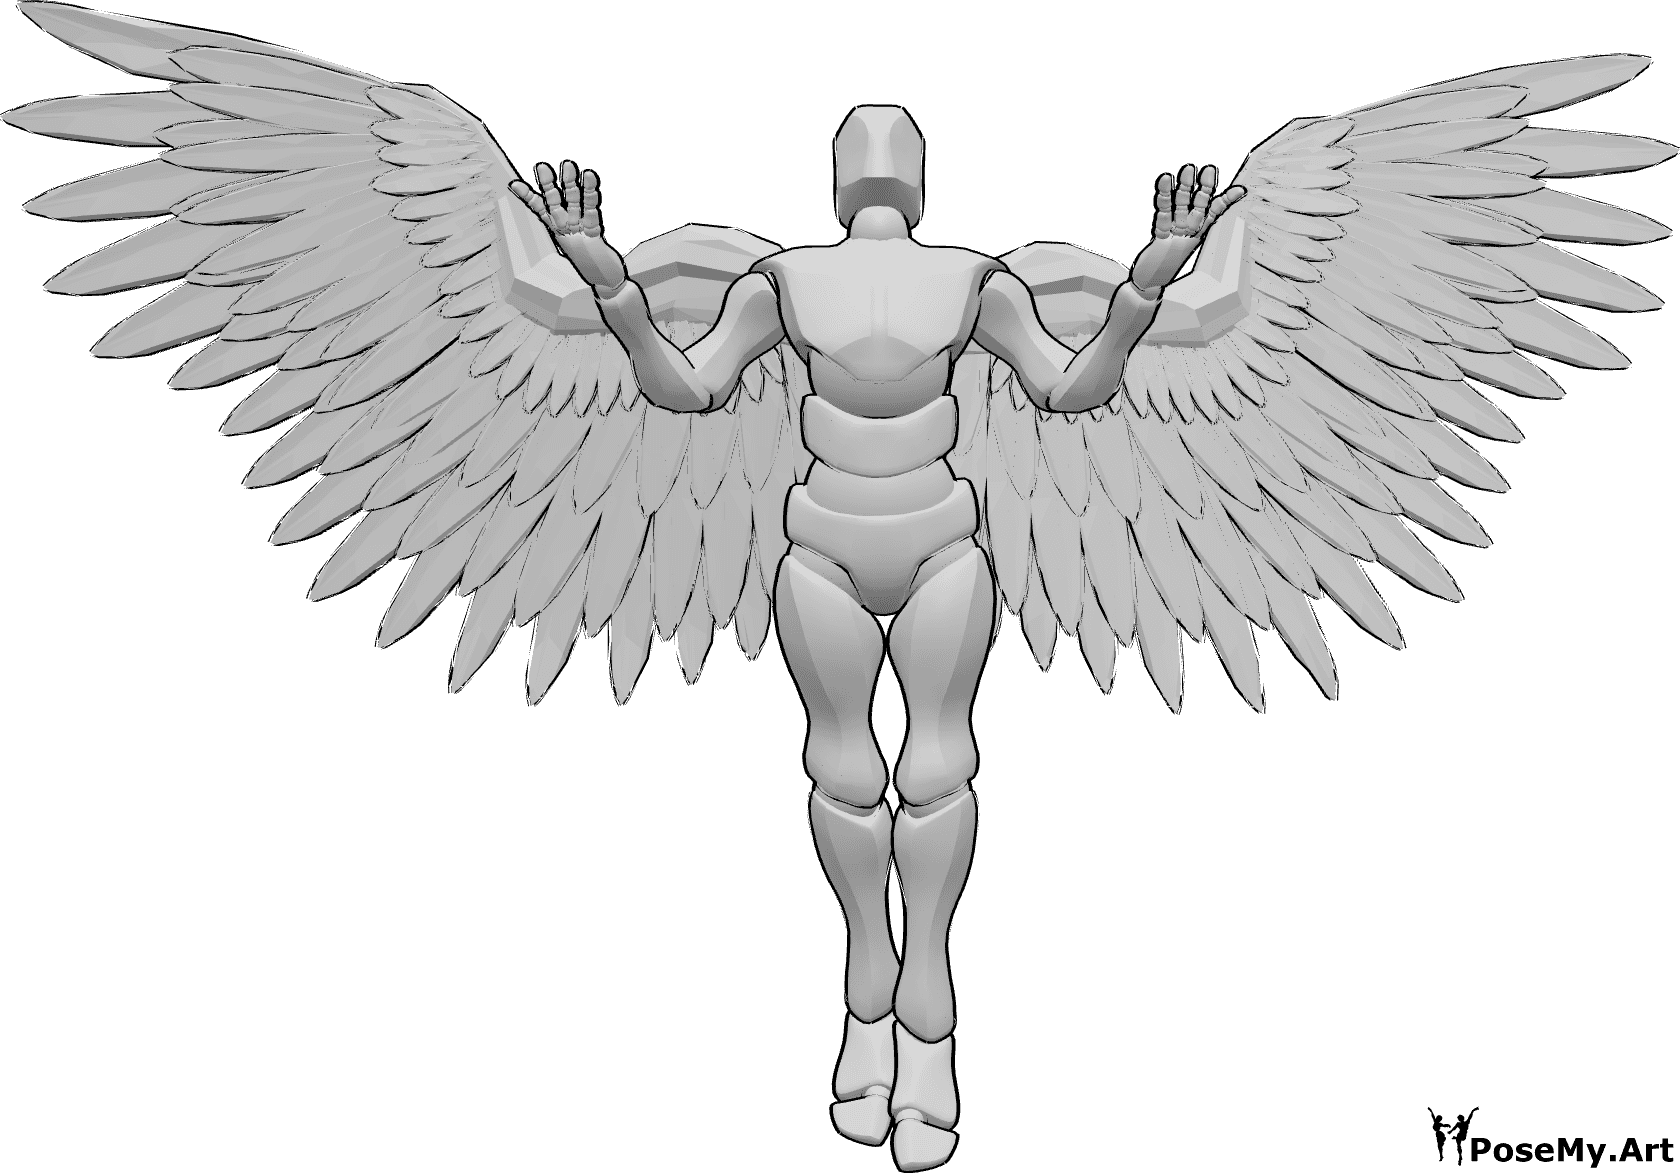 Riferimento alle pose- Posa delle ali d'angelo maschile - Uomo con ali d'angelo vola verso l'alto, alzando le mani e guardando in alto